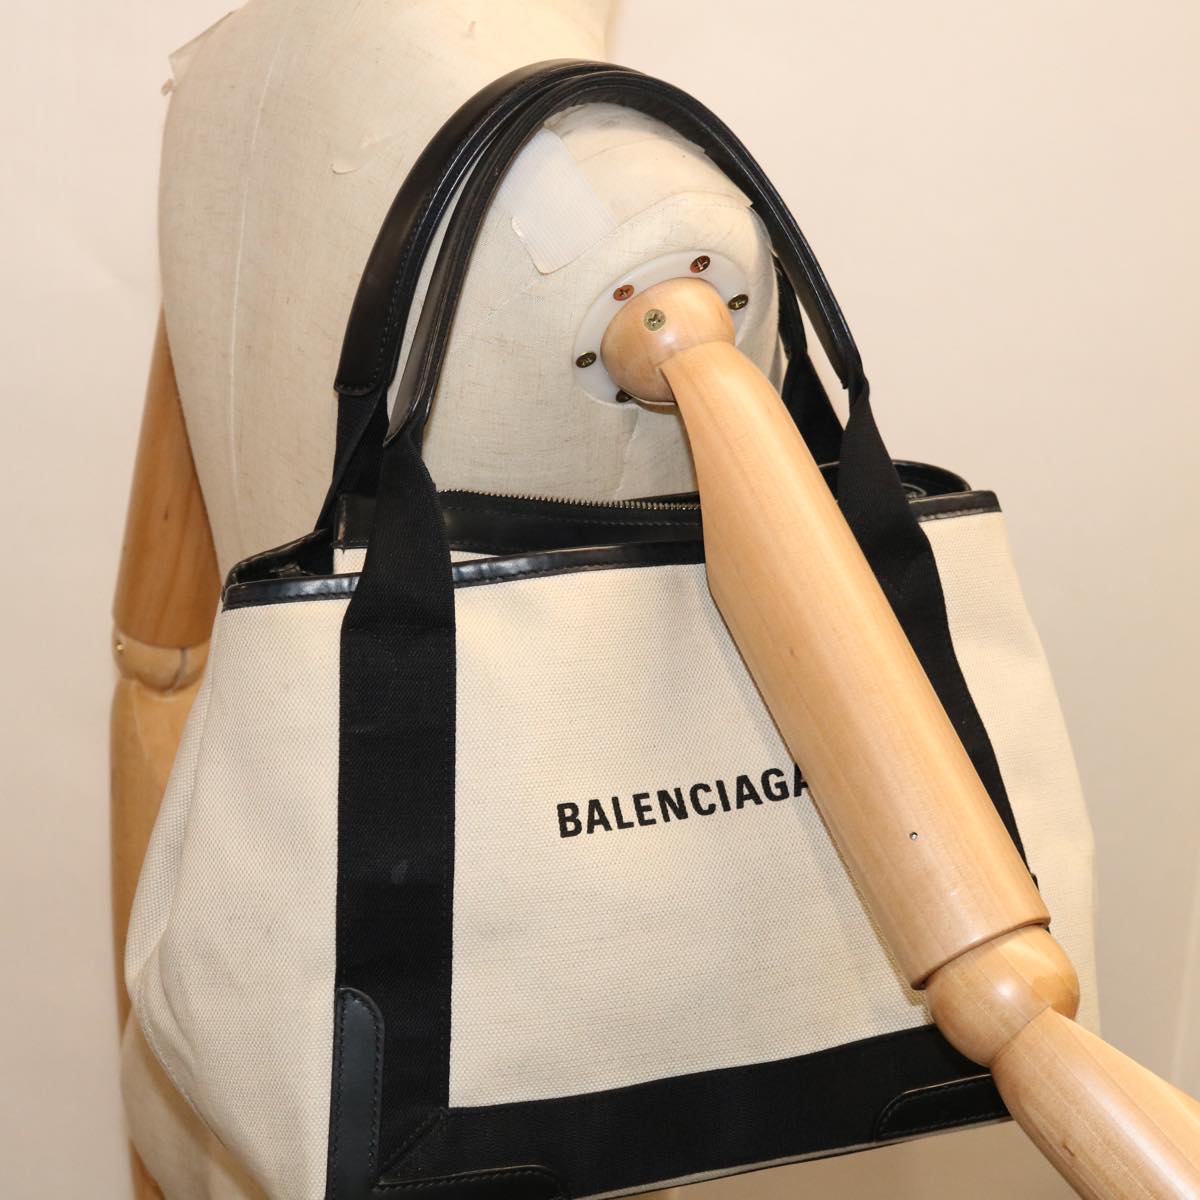 BALENCIAGA Tote Bag Canvas White Black 339933 Auth bs11818